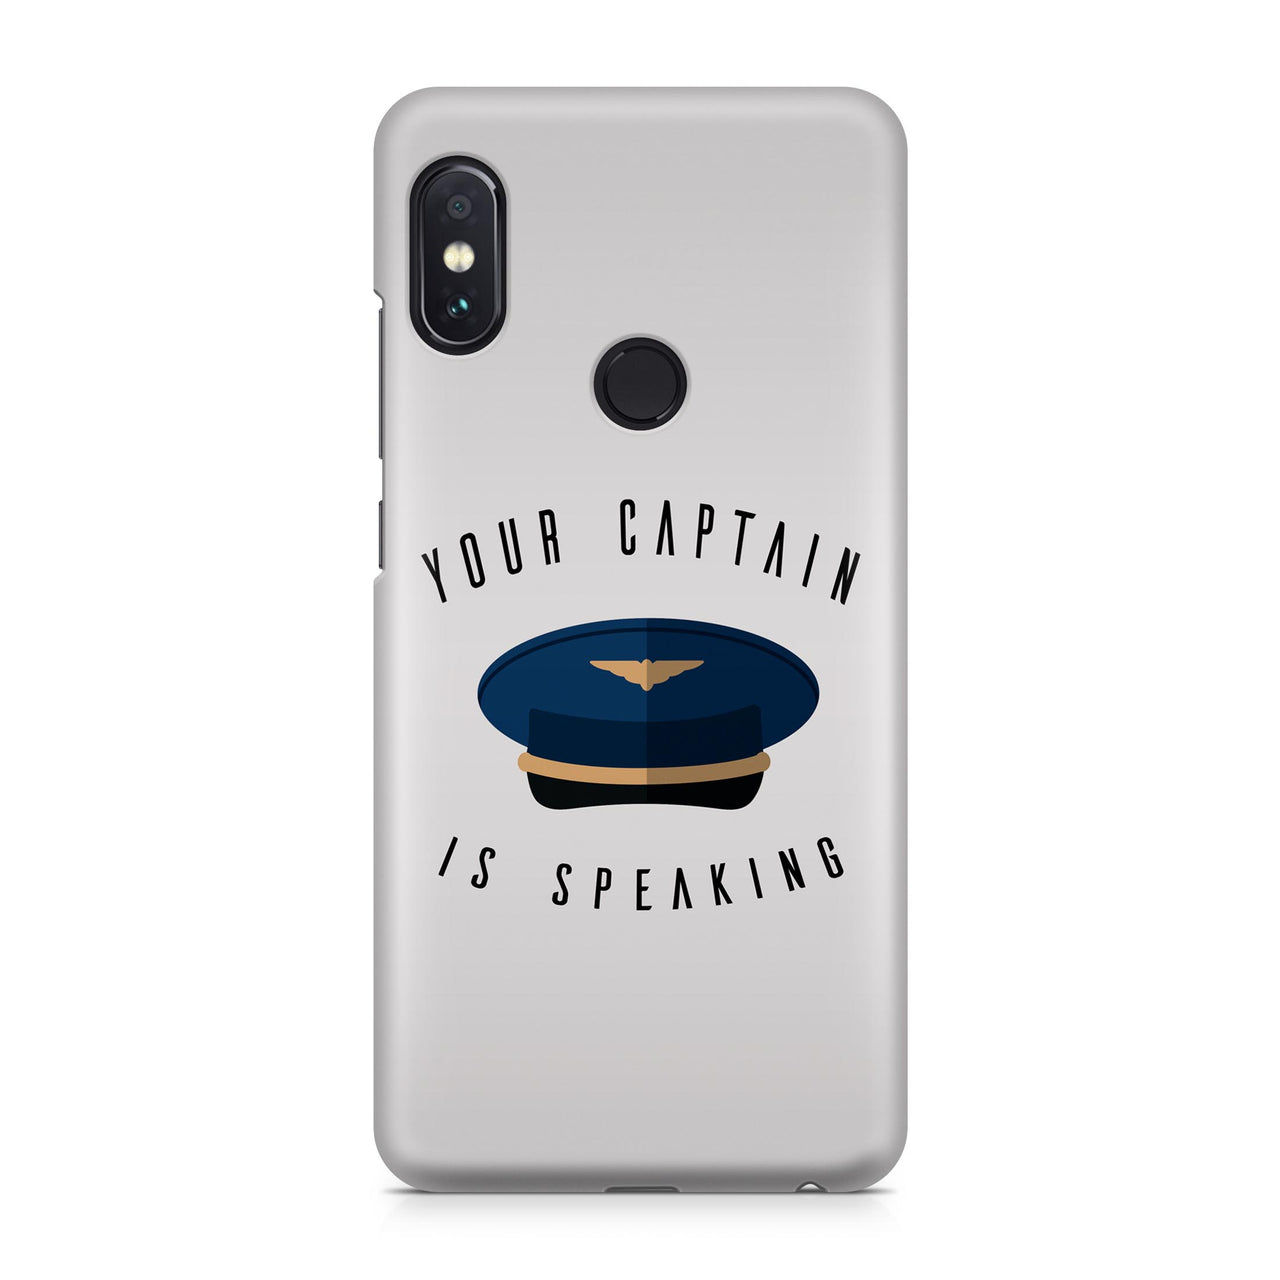 Your Captain is Speaking Designed Xiaomi Cases